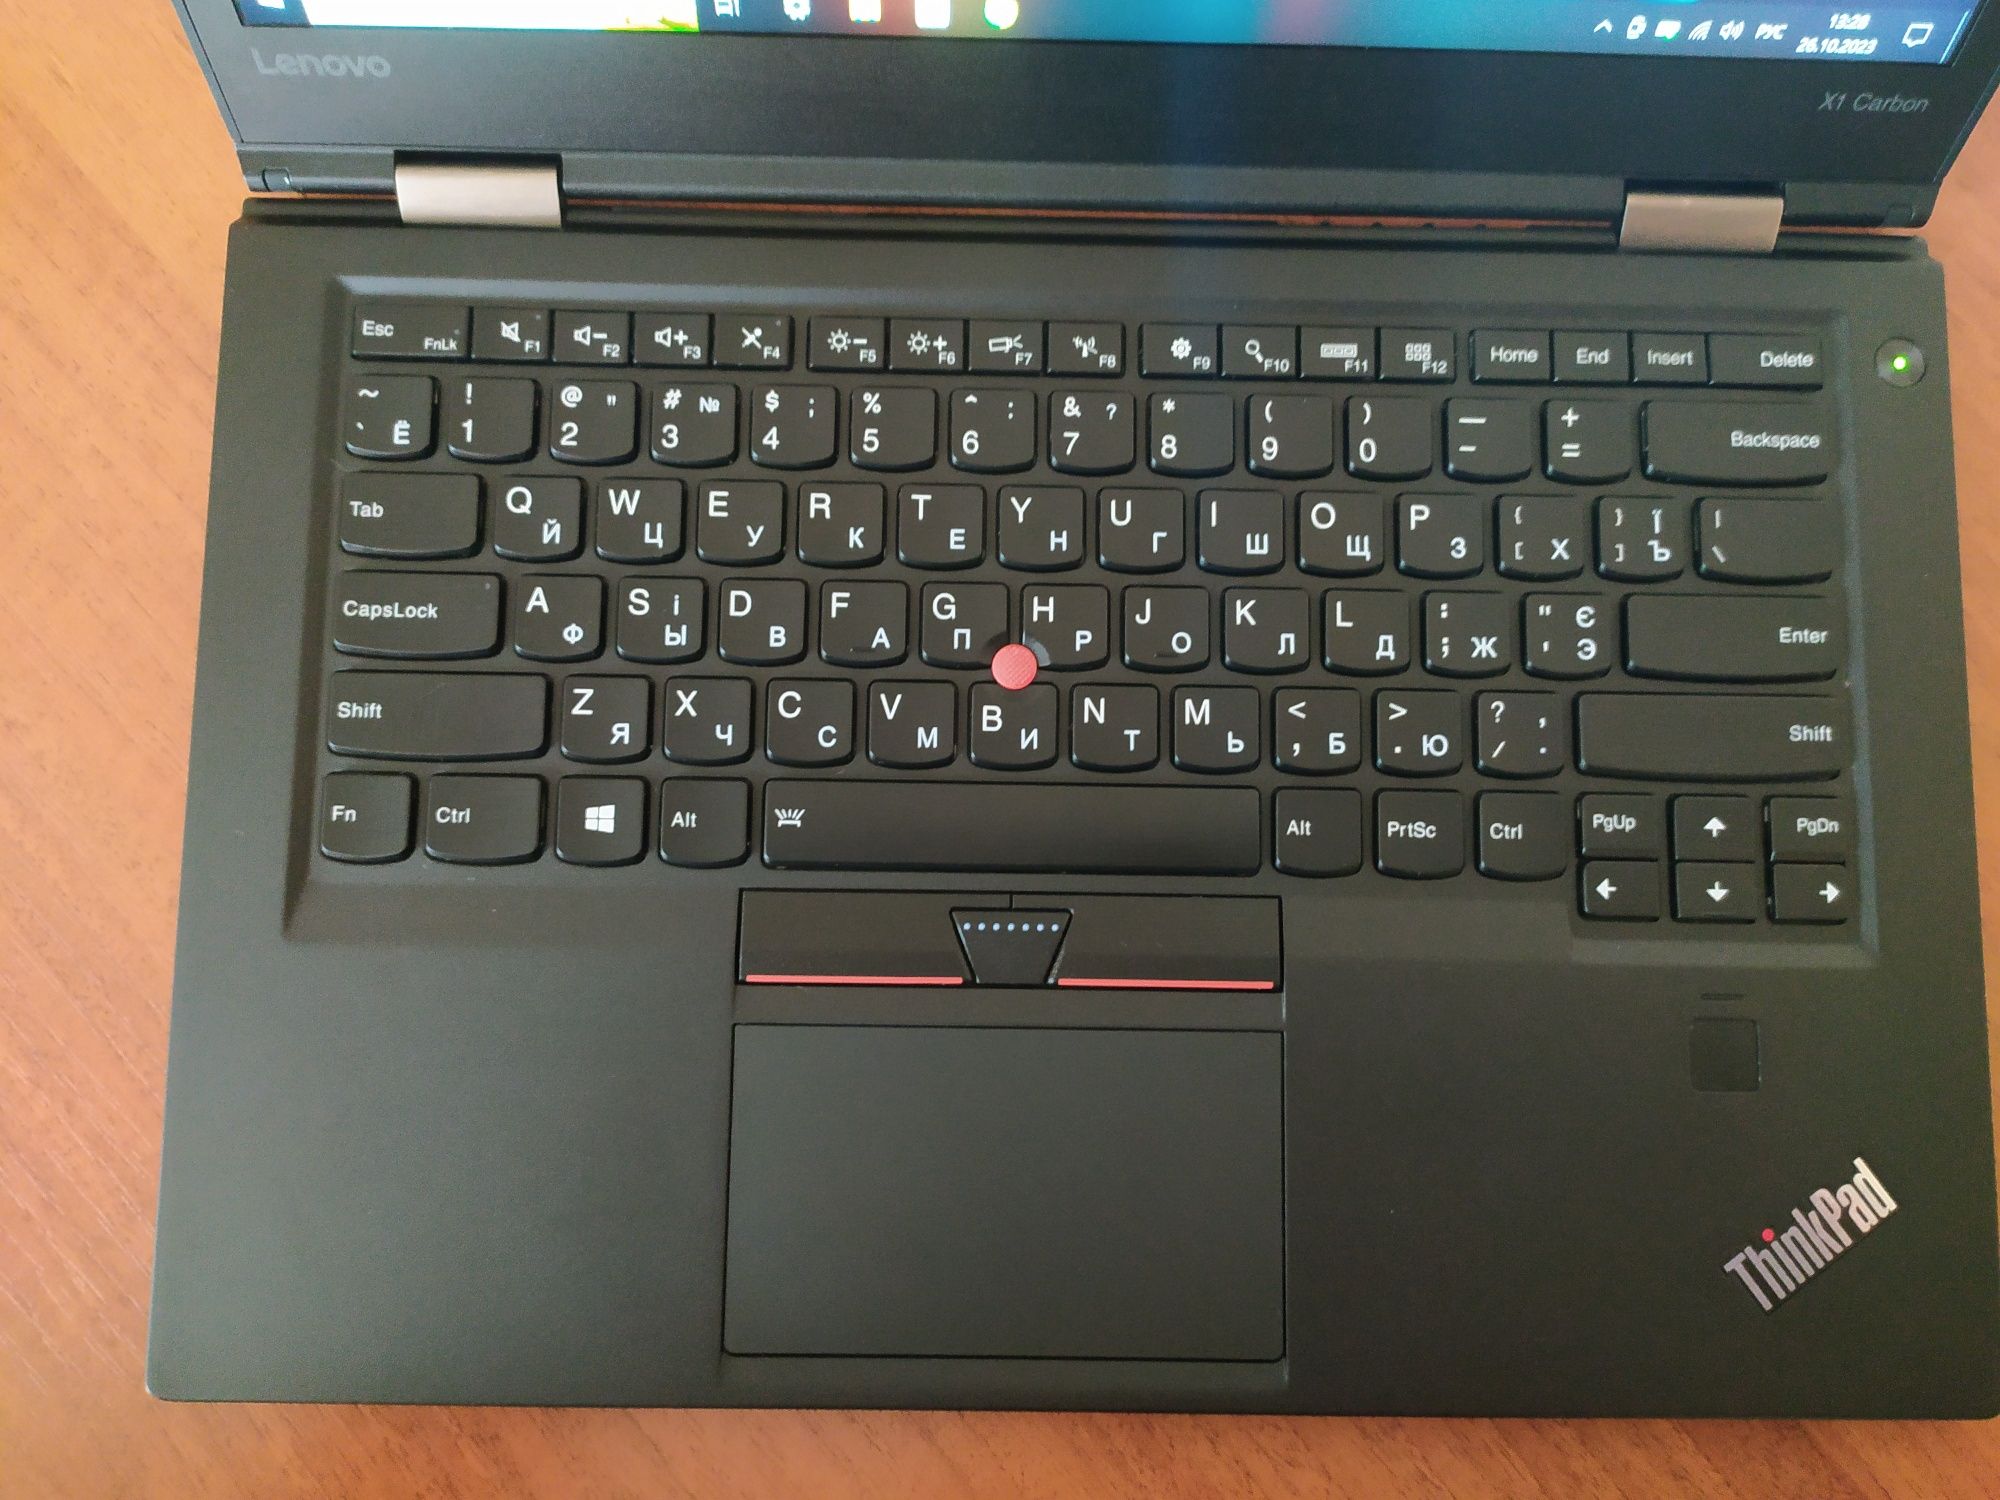 ThinkPad X1 Carbon Gen 4, I5-6200u, 8Gb RAM, 180Gb SSD